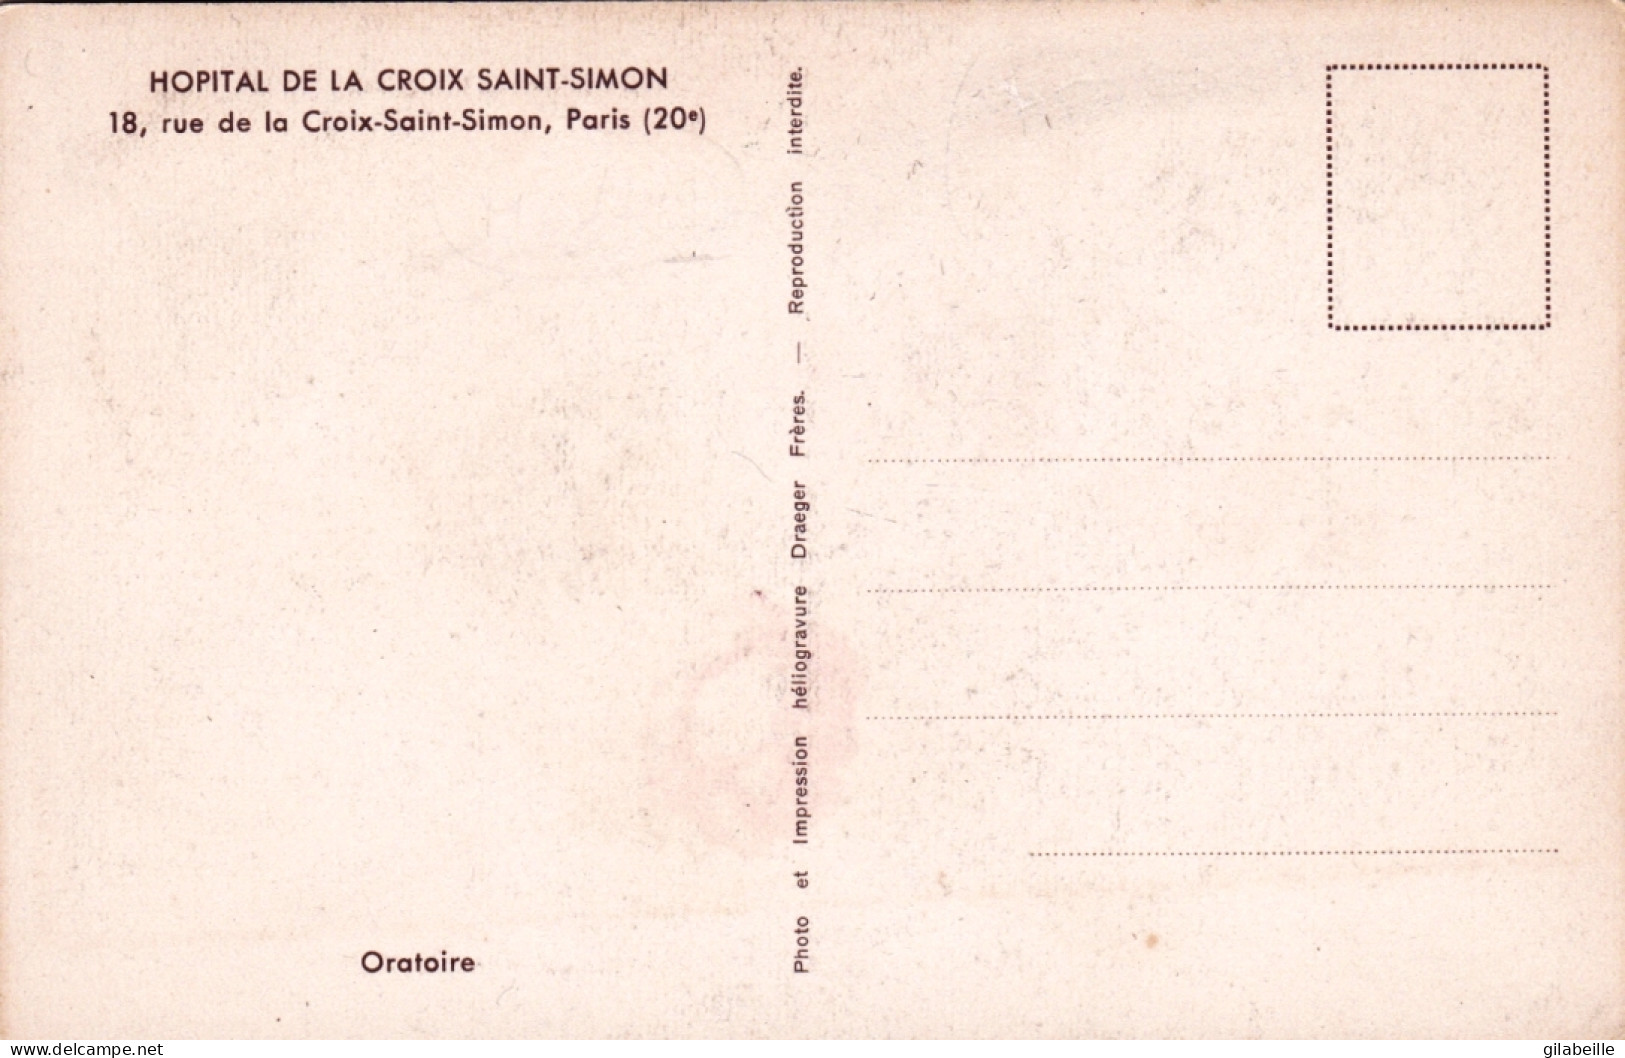 75 -  PARIS 20e 18, Rue De La Croix-Saint-Simon Hopital - Oratoire - Arrondissement: 20